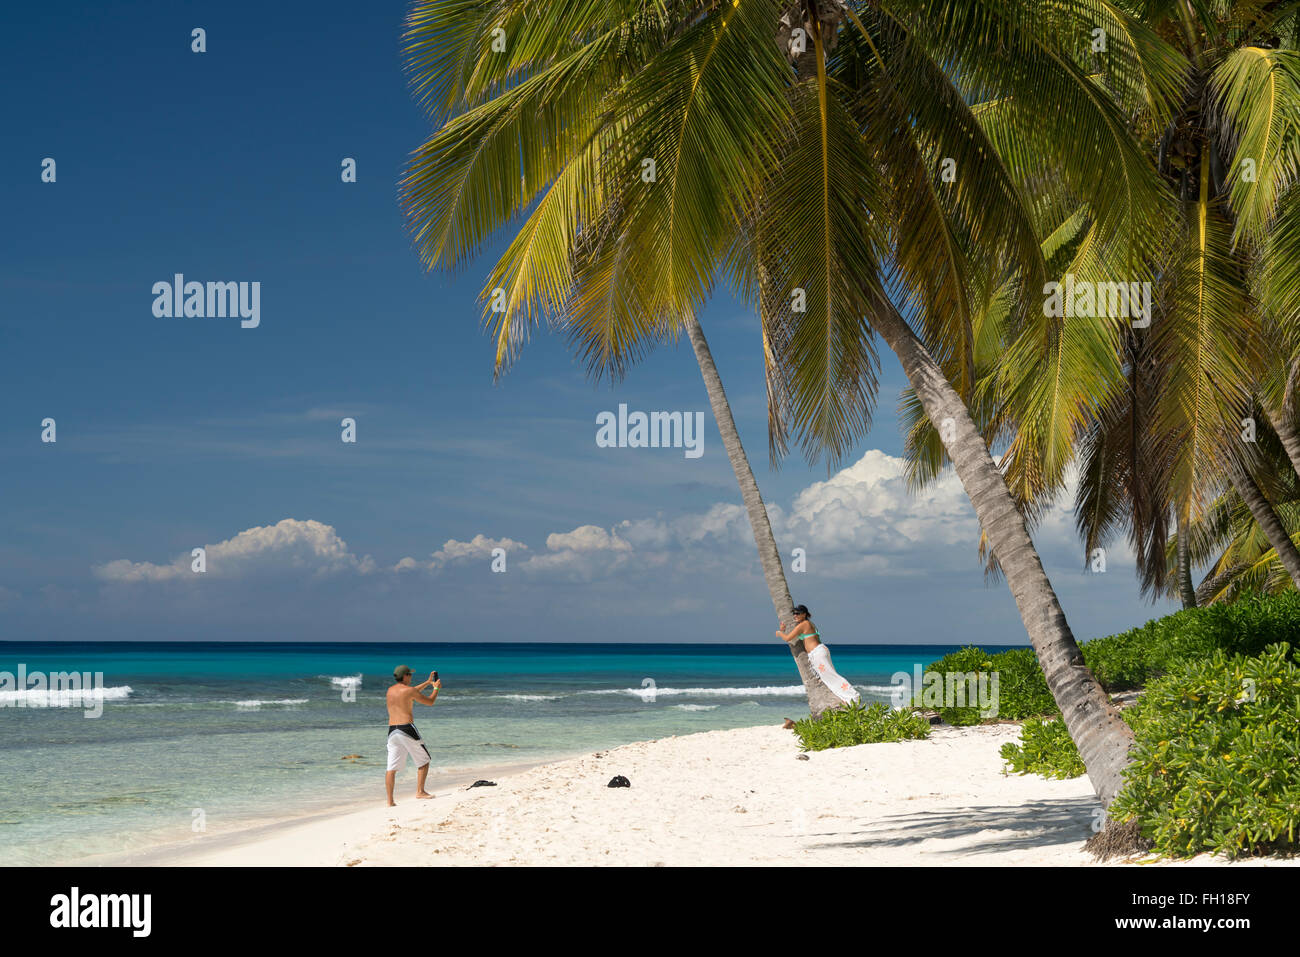 Playa de ensueño en la isla caribeña Isla Saona, República Dominicana, El Caribe, América, Foto de stock